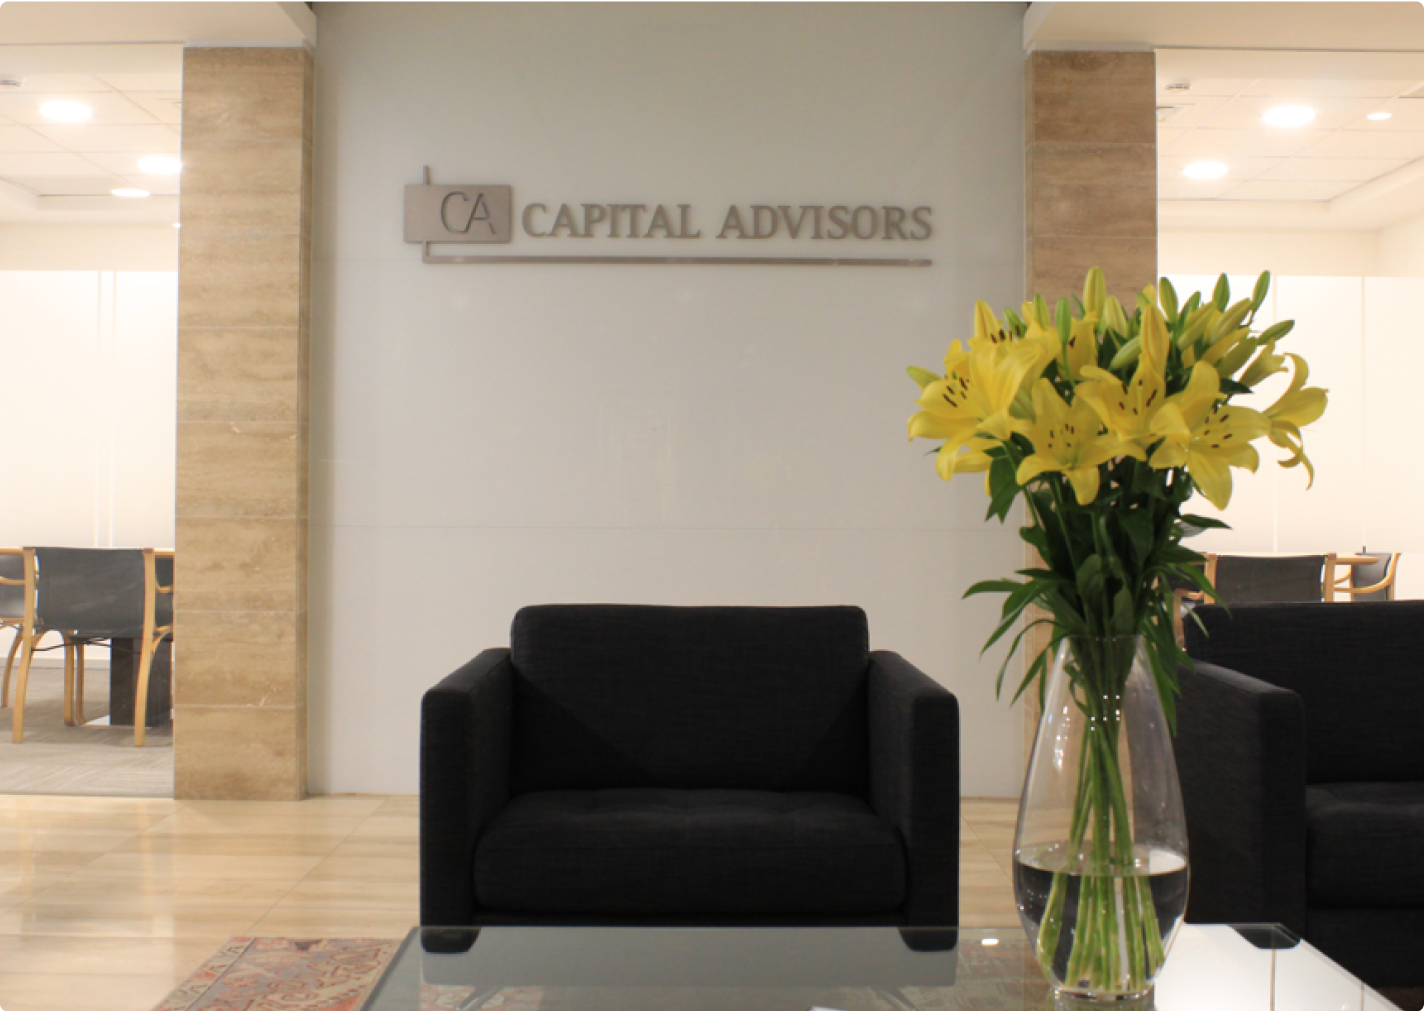 Foto de la oficina de Capital Advisors con una flor amarilla de decoración.